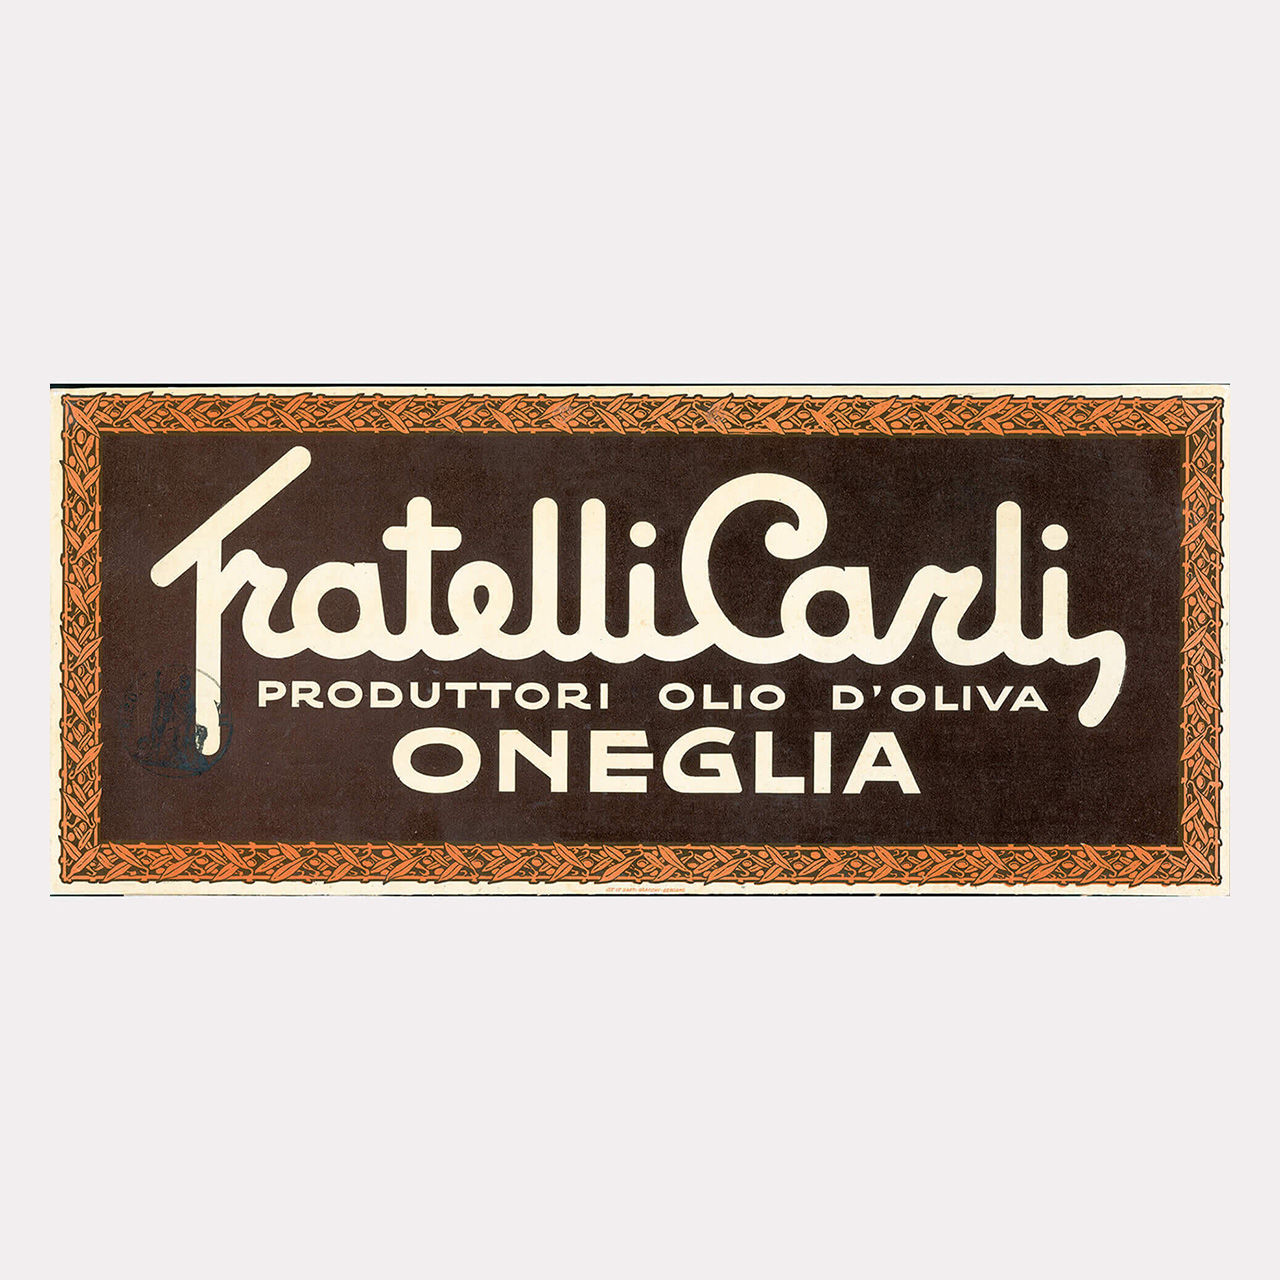 First Fratelli Carli logo 